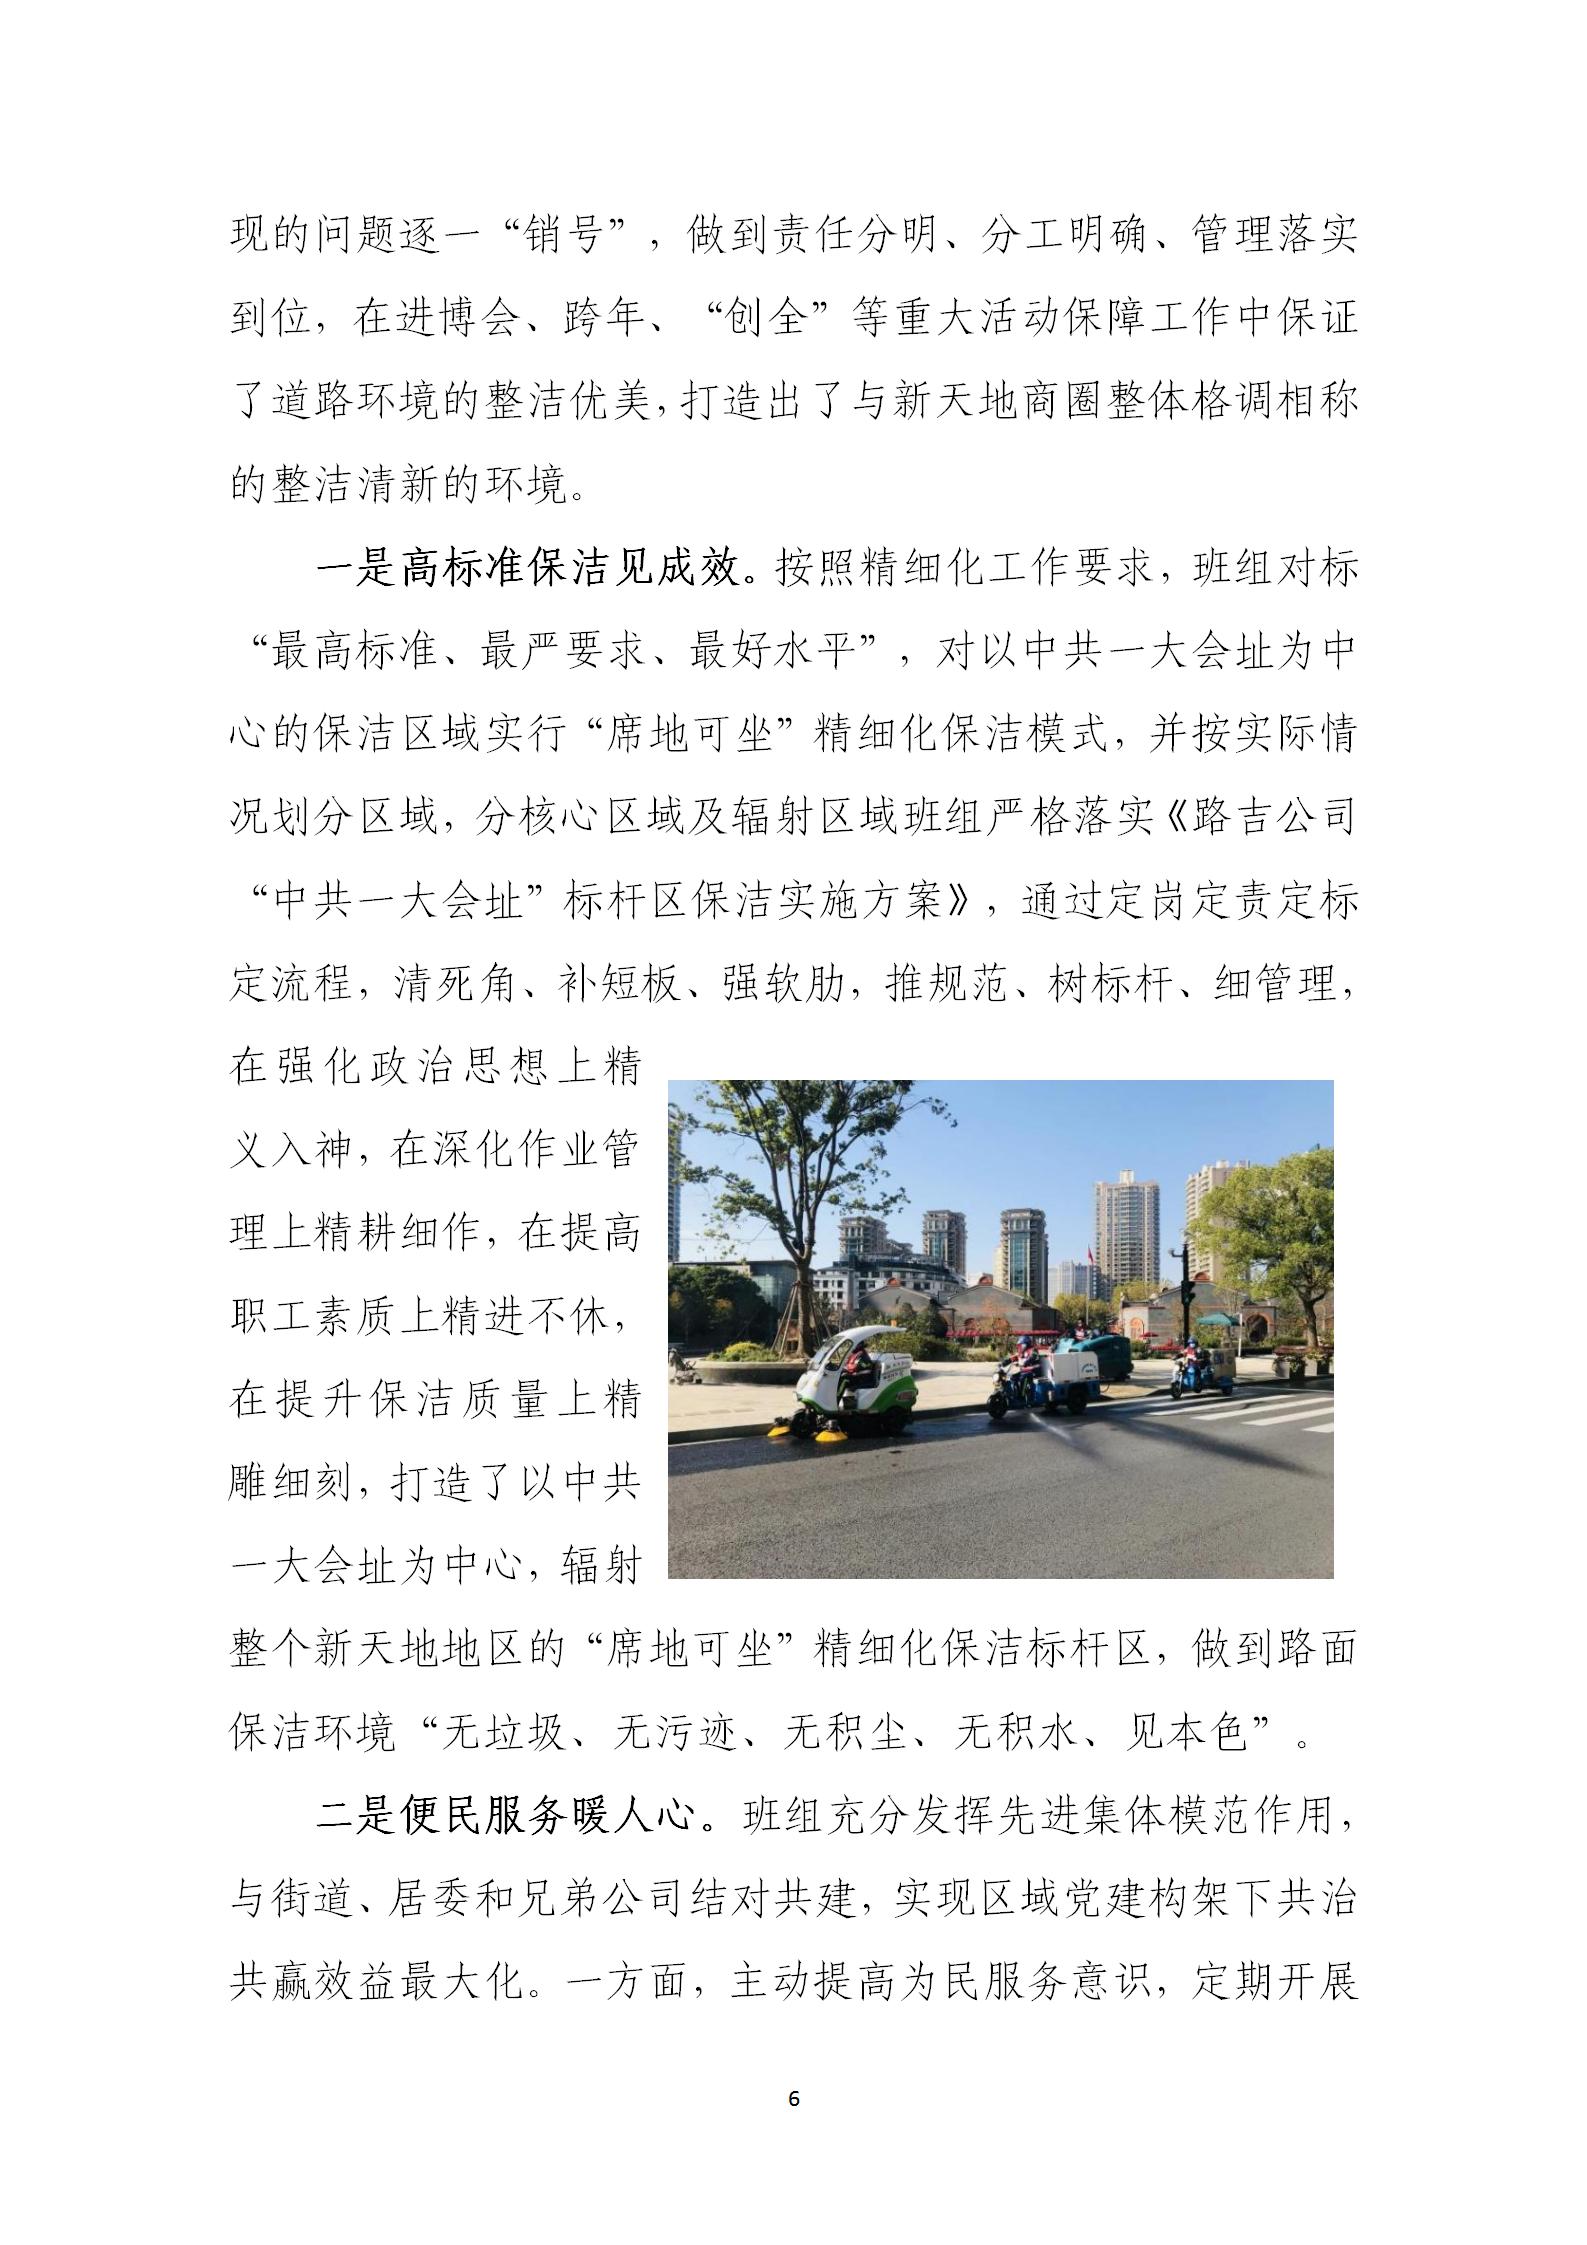 上海市道路保洁与垃圾清运工作月刊  2023年第3期(8)_06.jpg